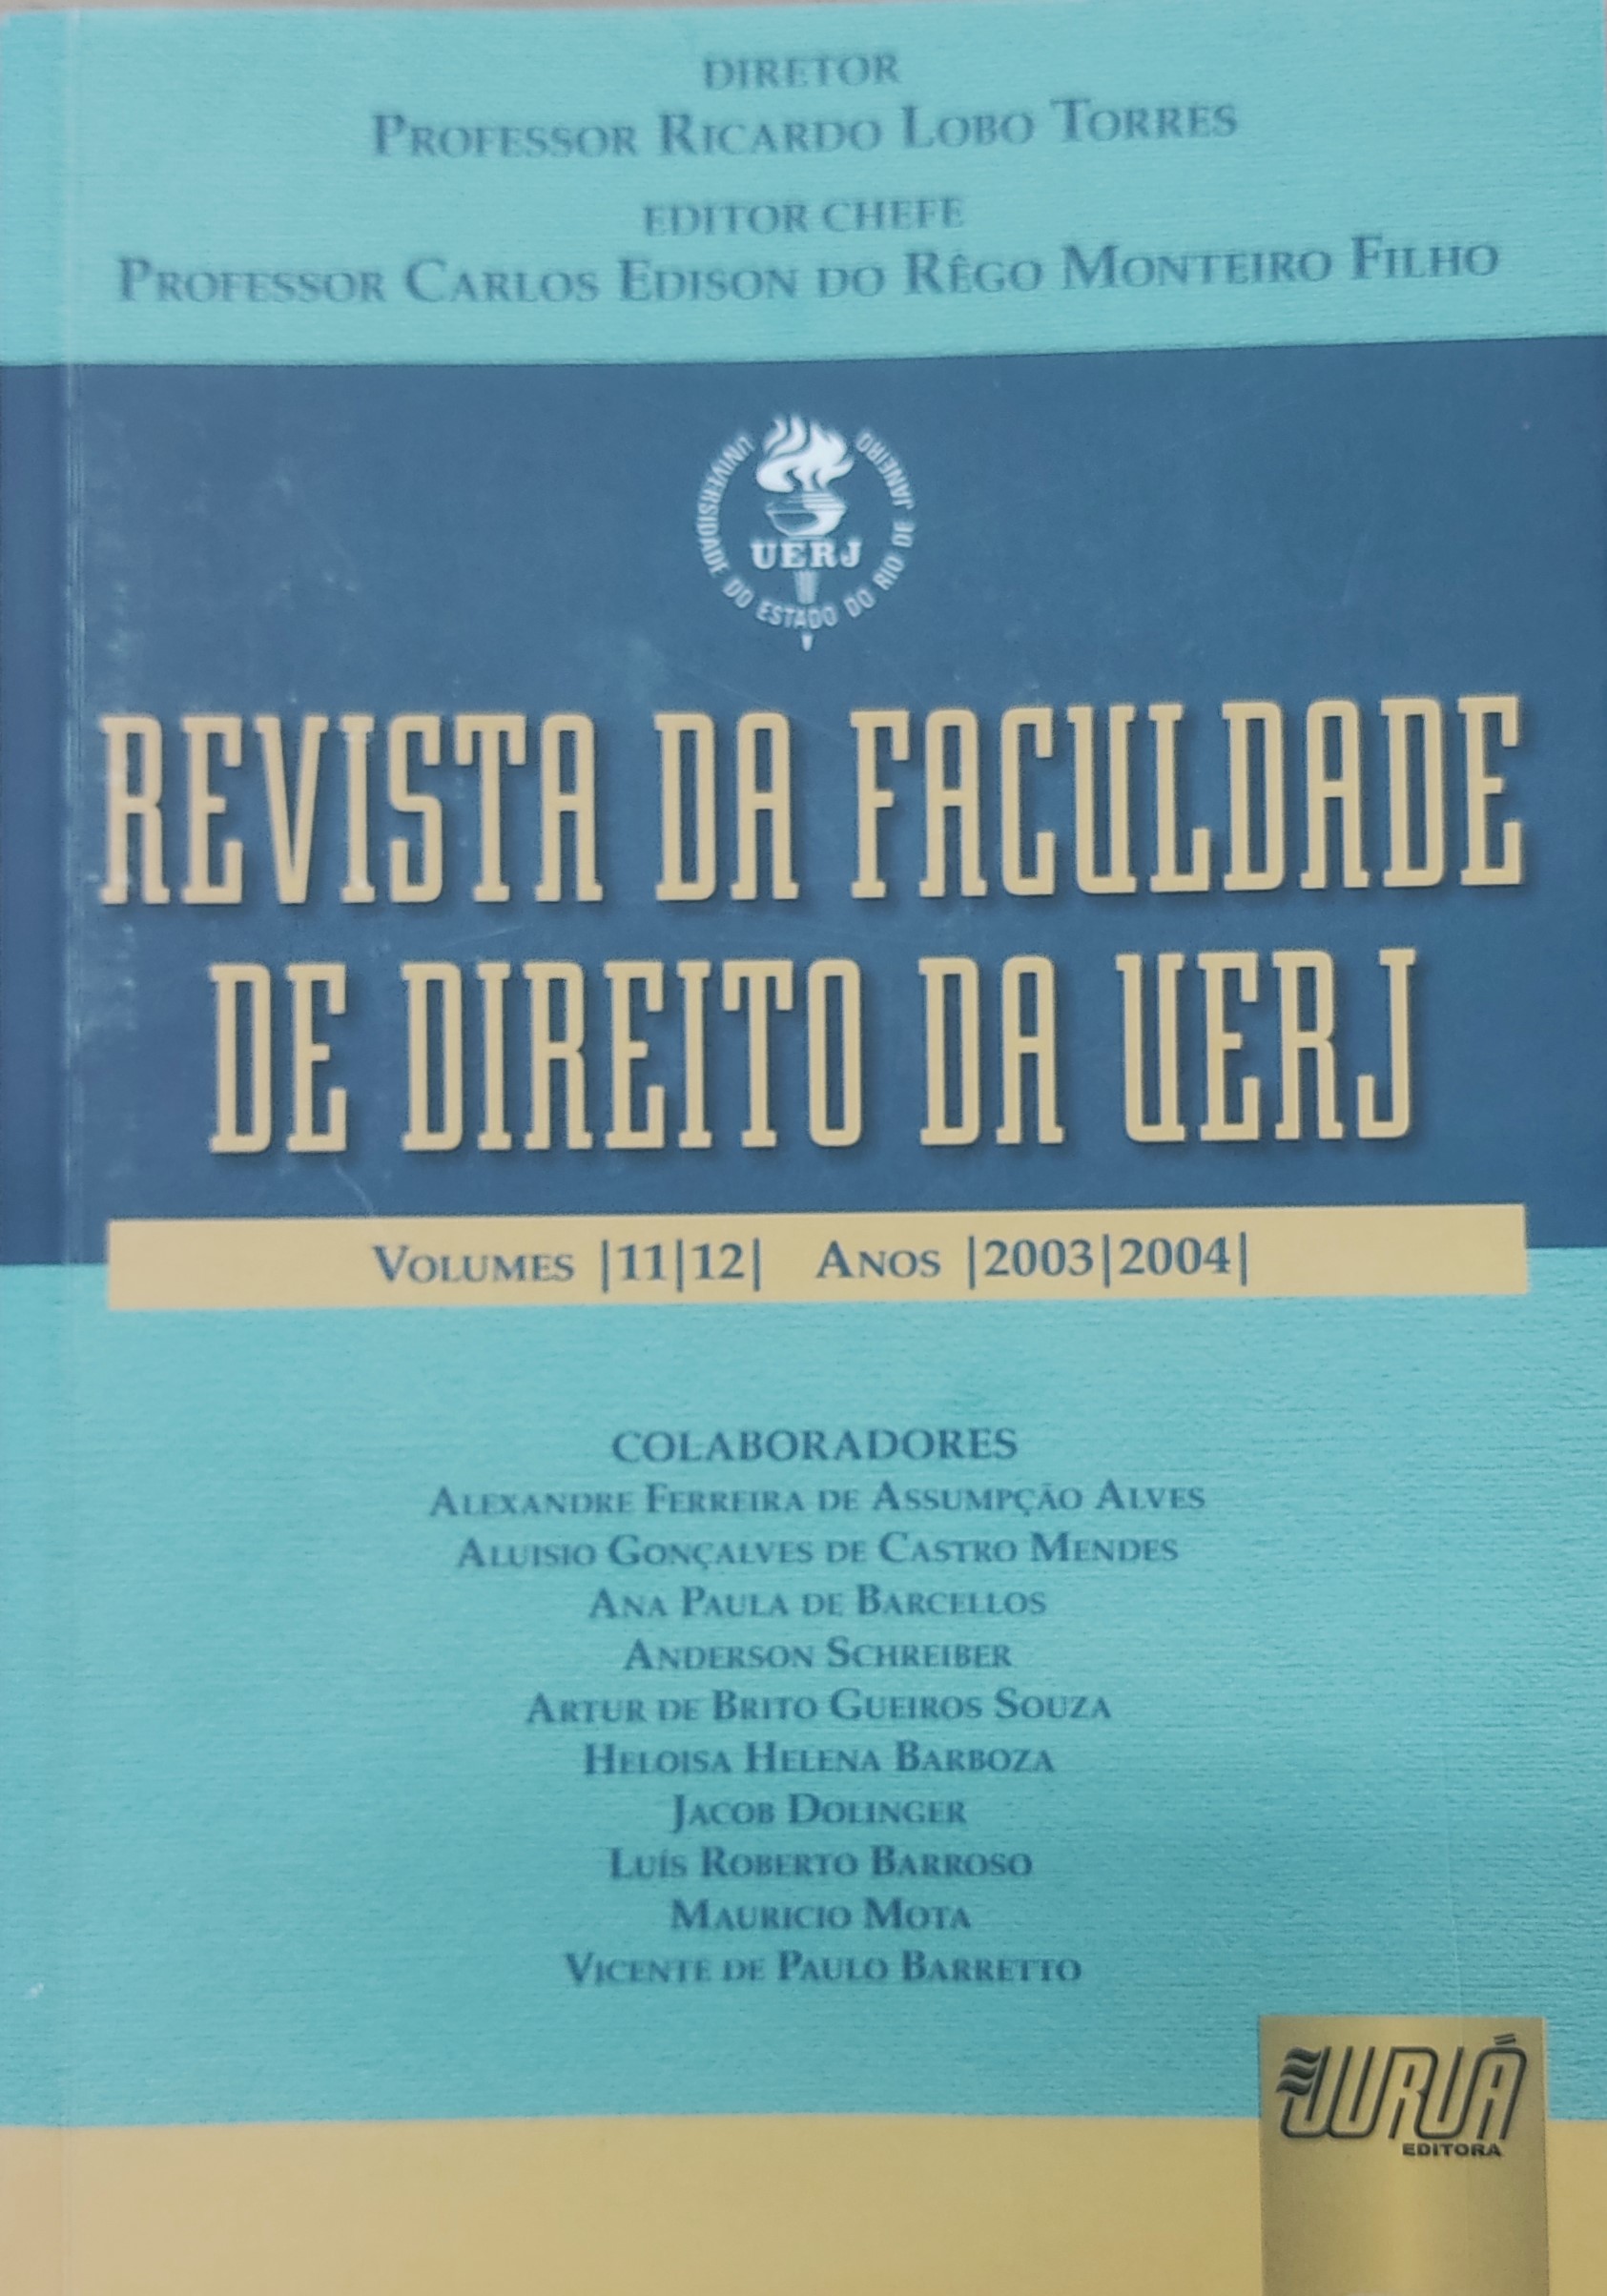 					Ver Núm. 11, 12 (2003) (2004): Revista da Faculdade de Direito da UERJ - RFD
				